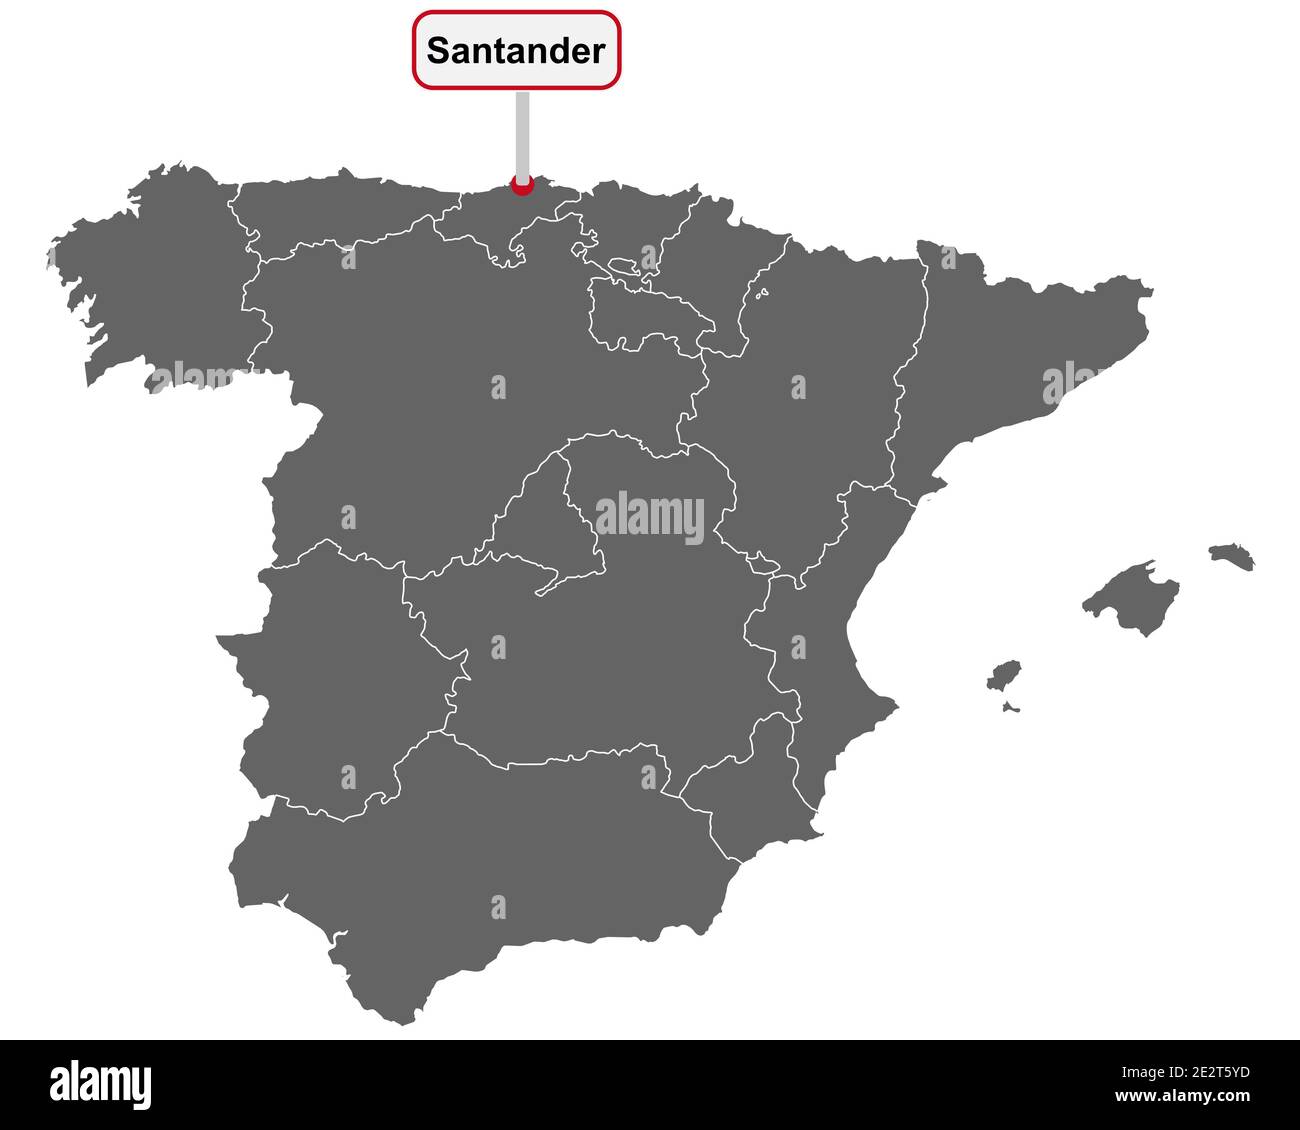 Posizionare il cartello con il nome Santander sulla mappa della Spagna Foto Stock